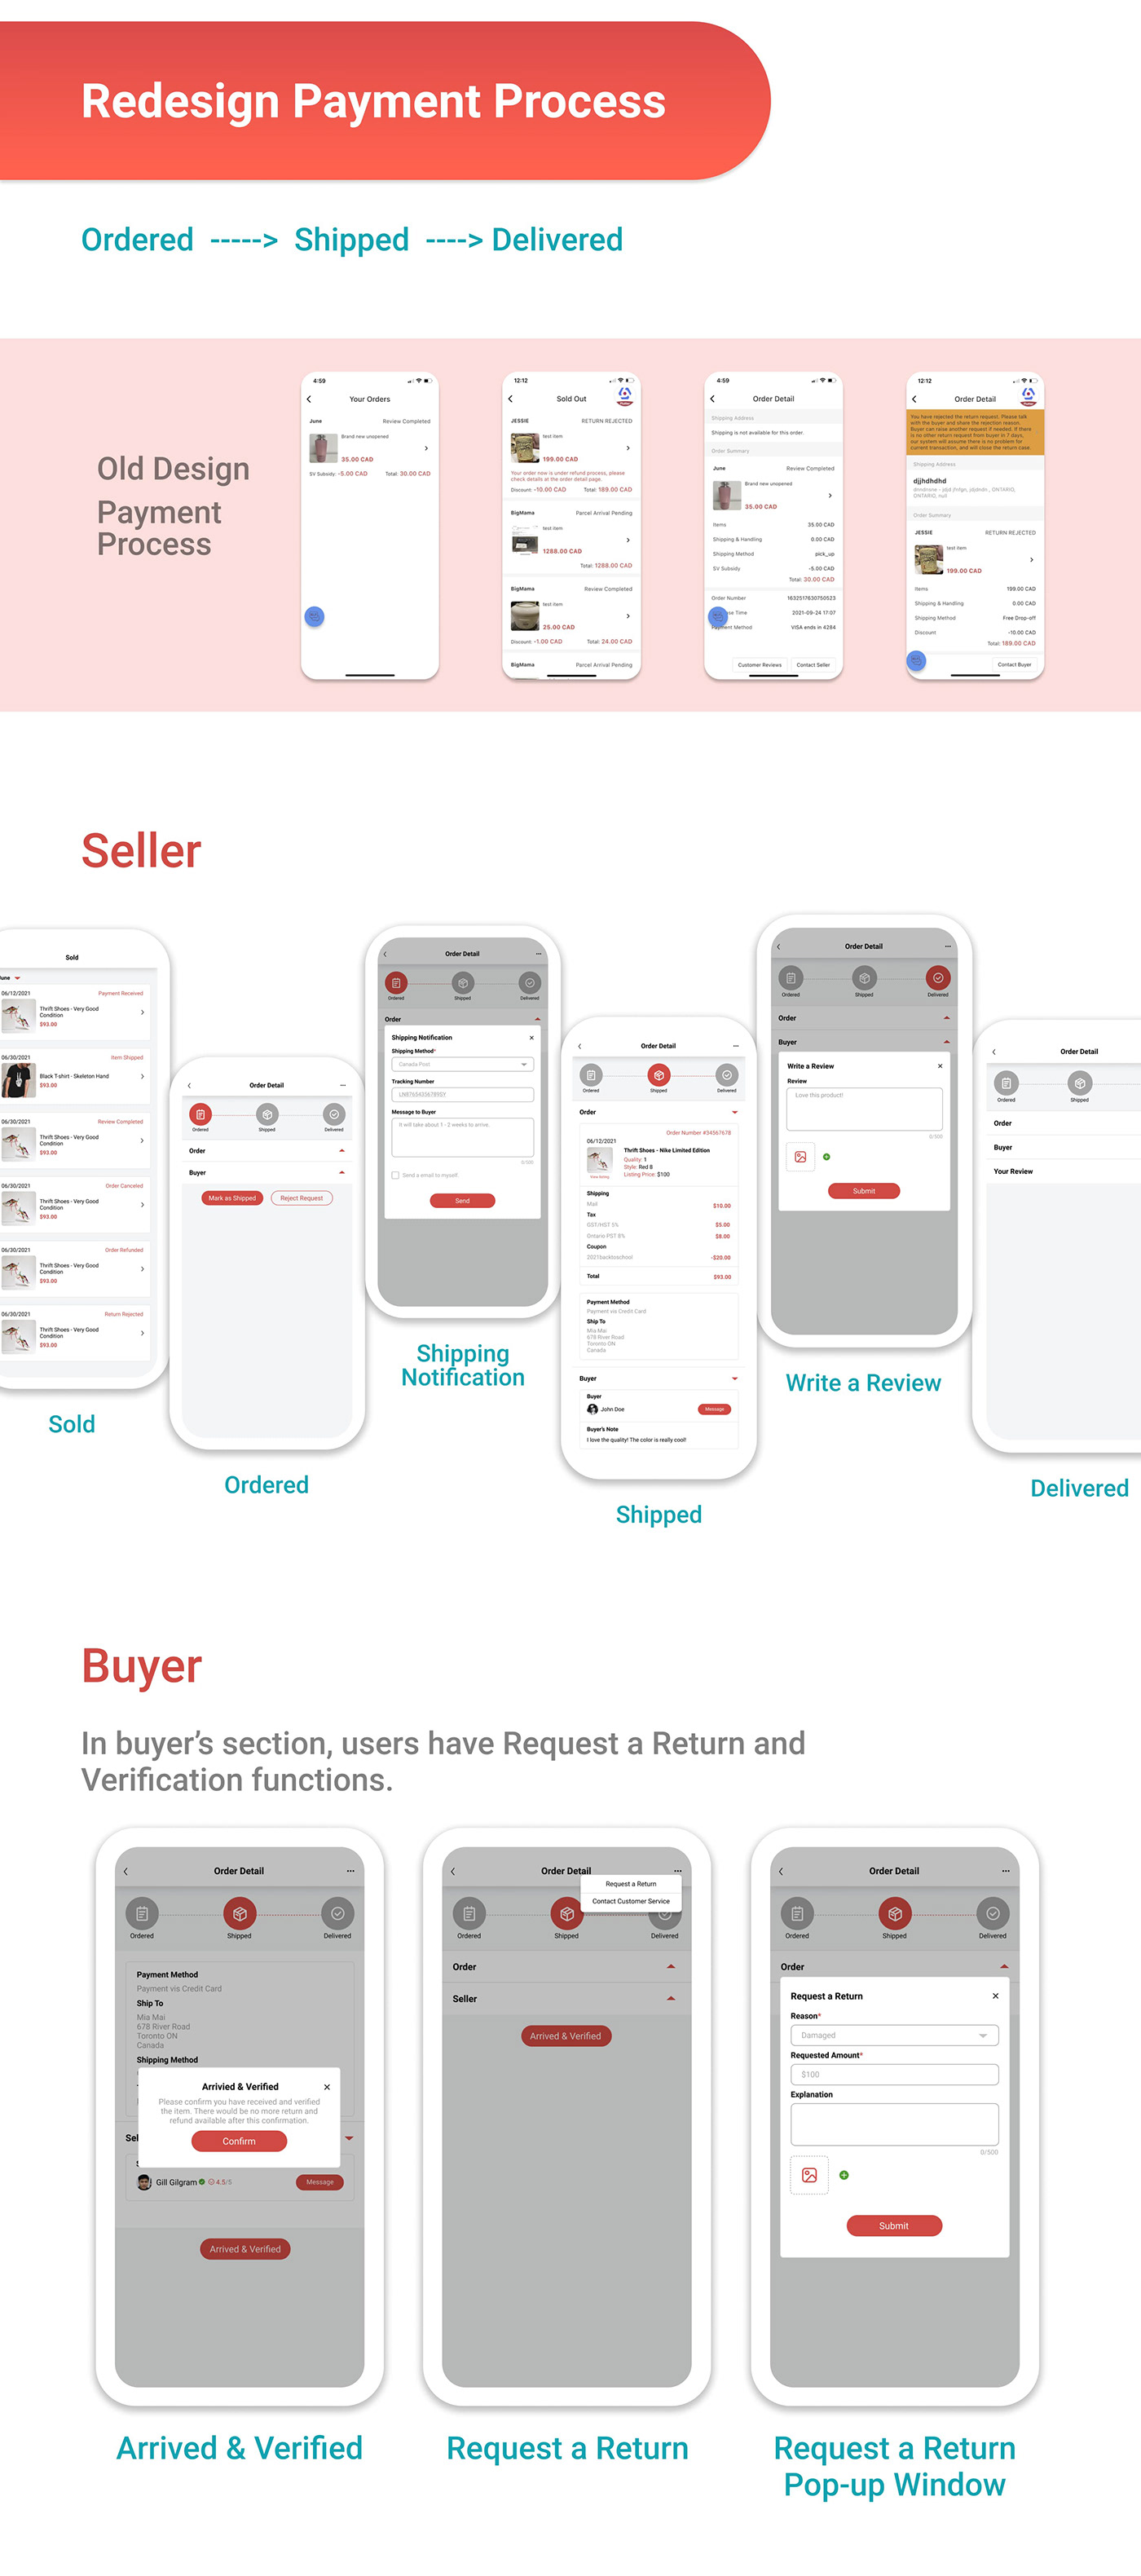 Mobile app UI/UX Design